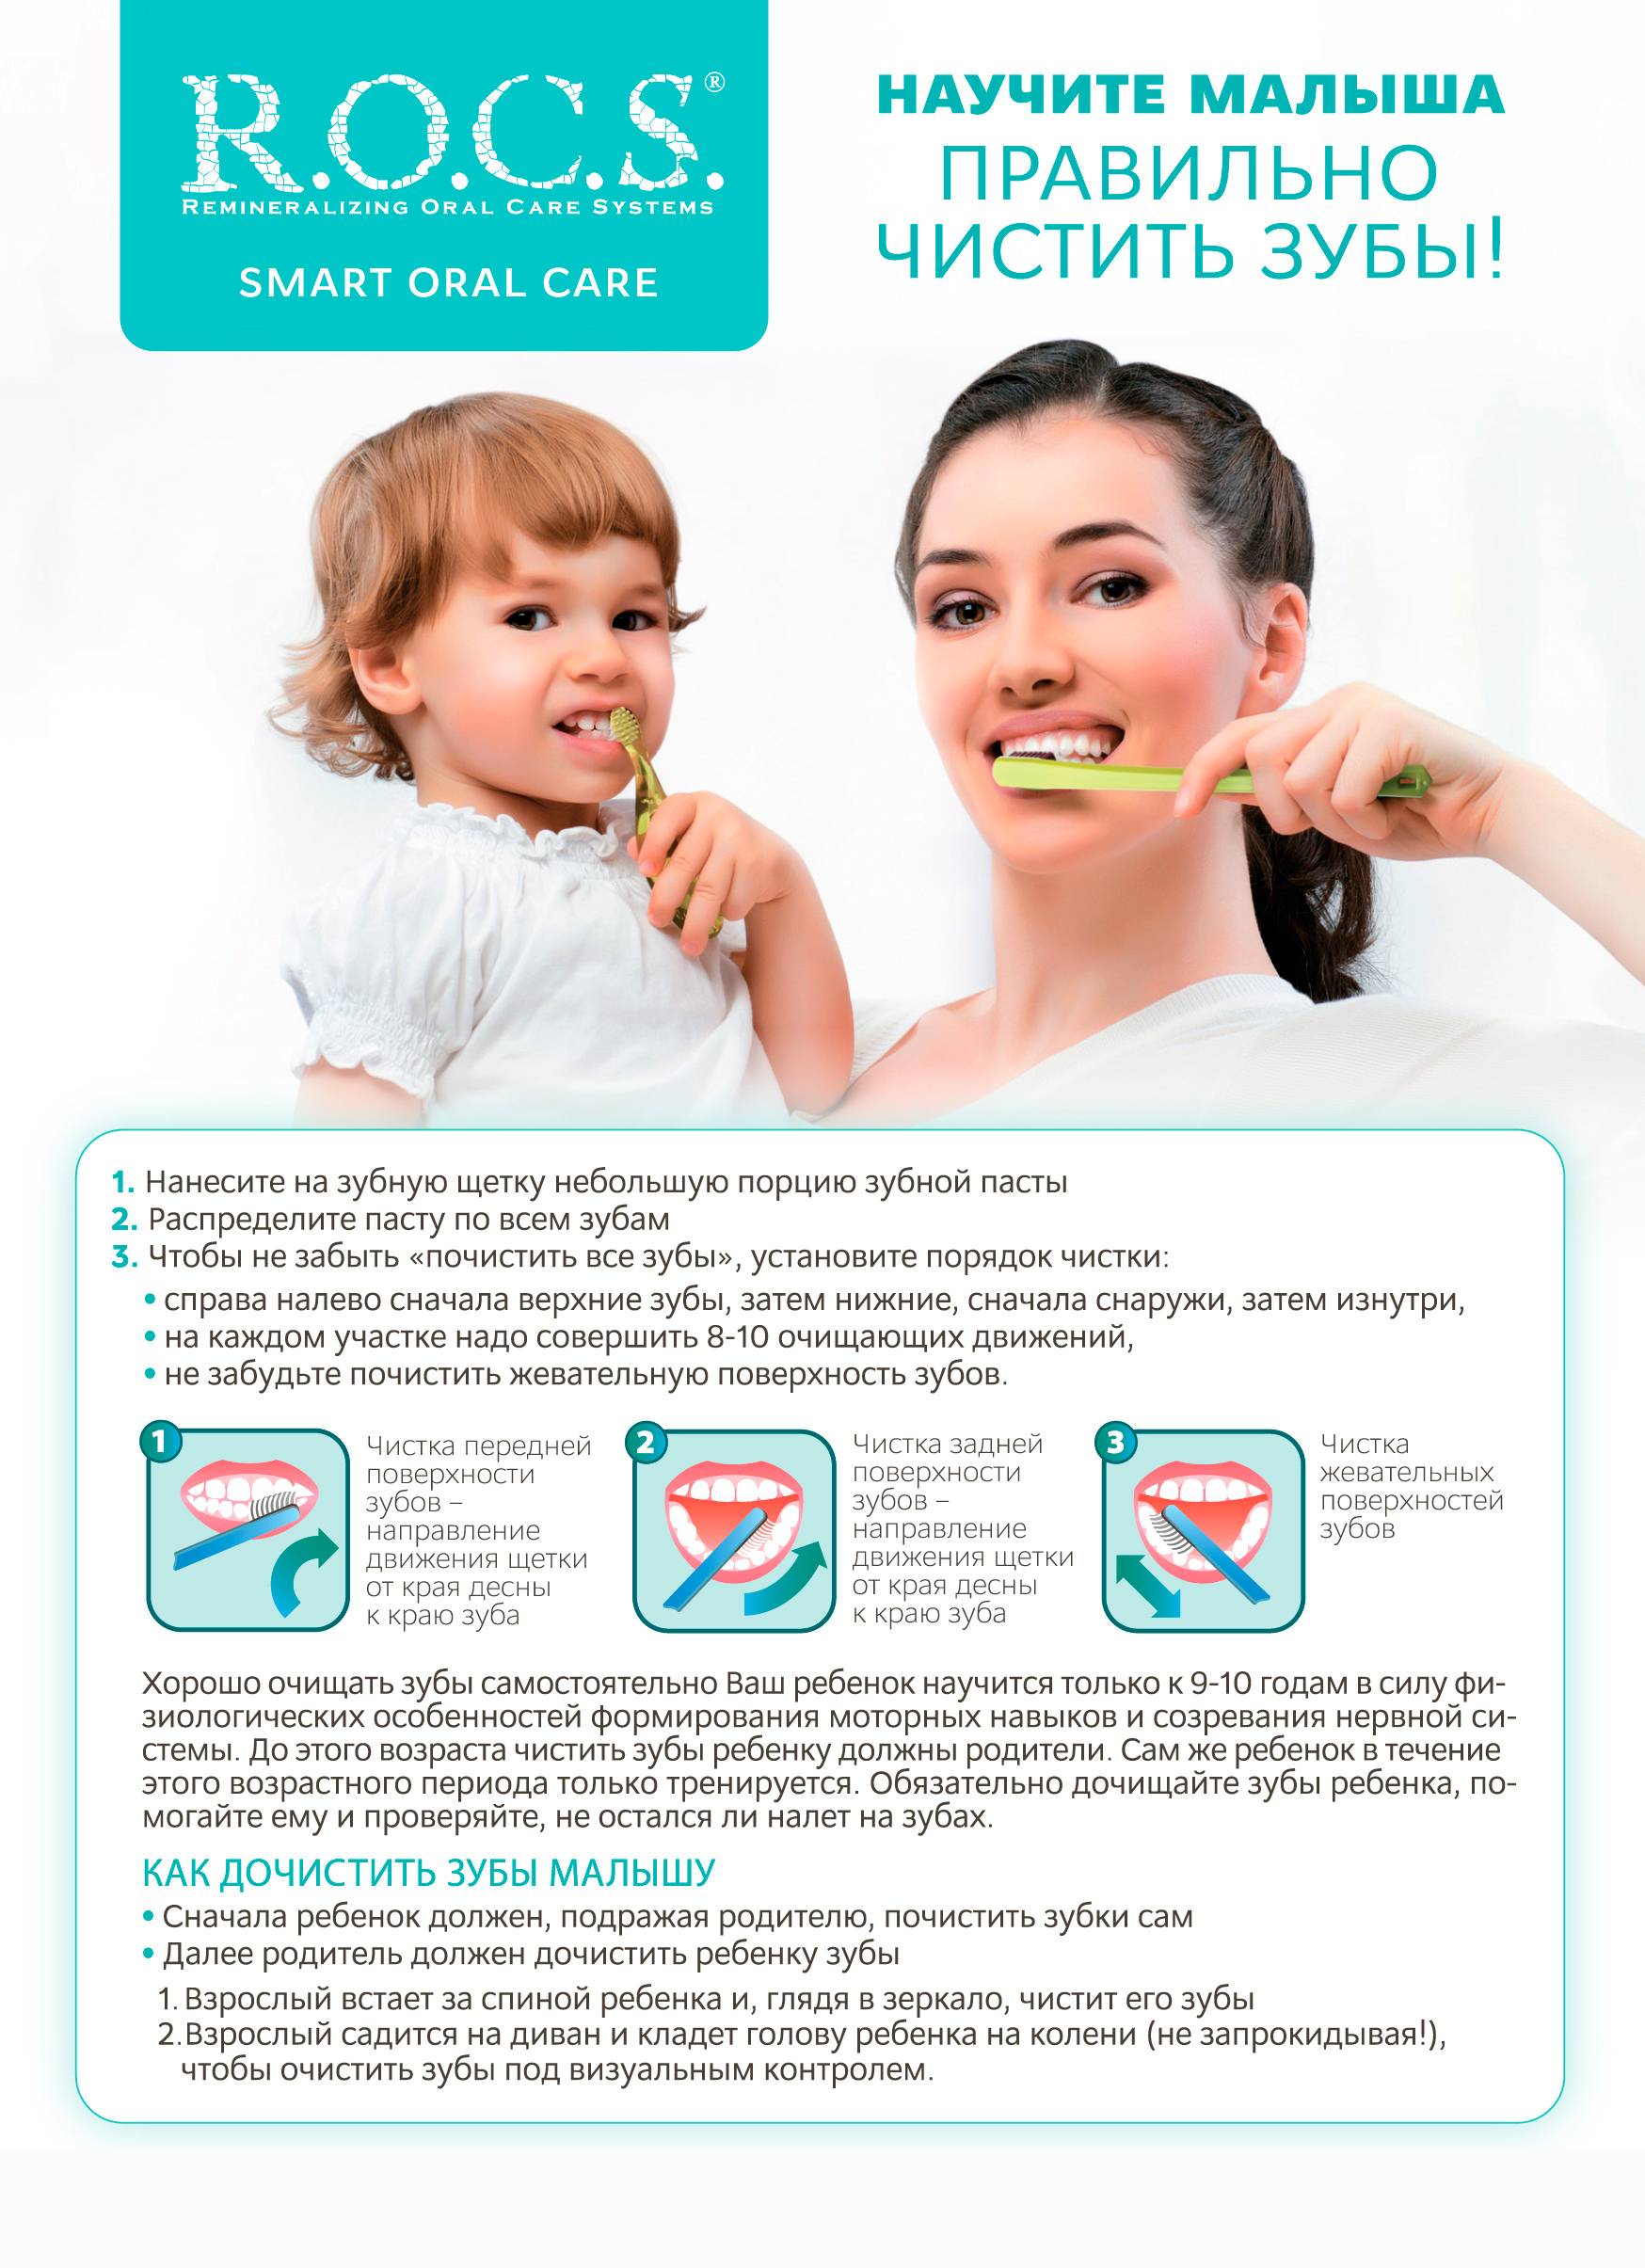 Когда начинать чистить зубы ребенку и как правильно это делать